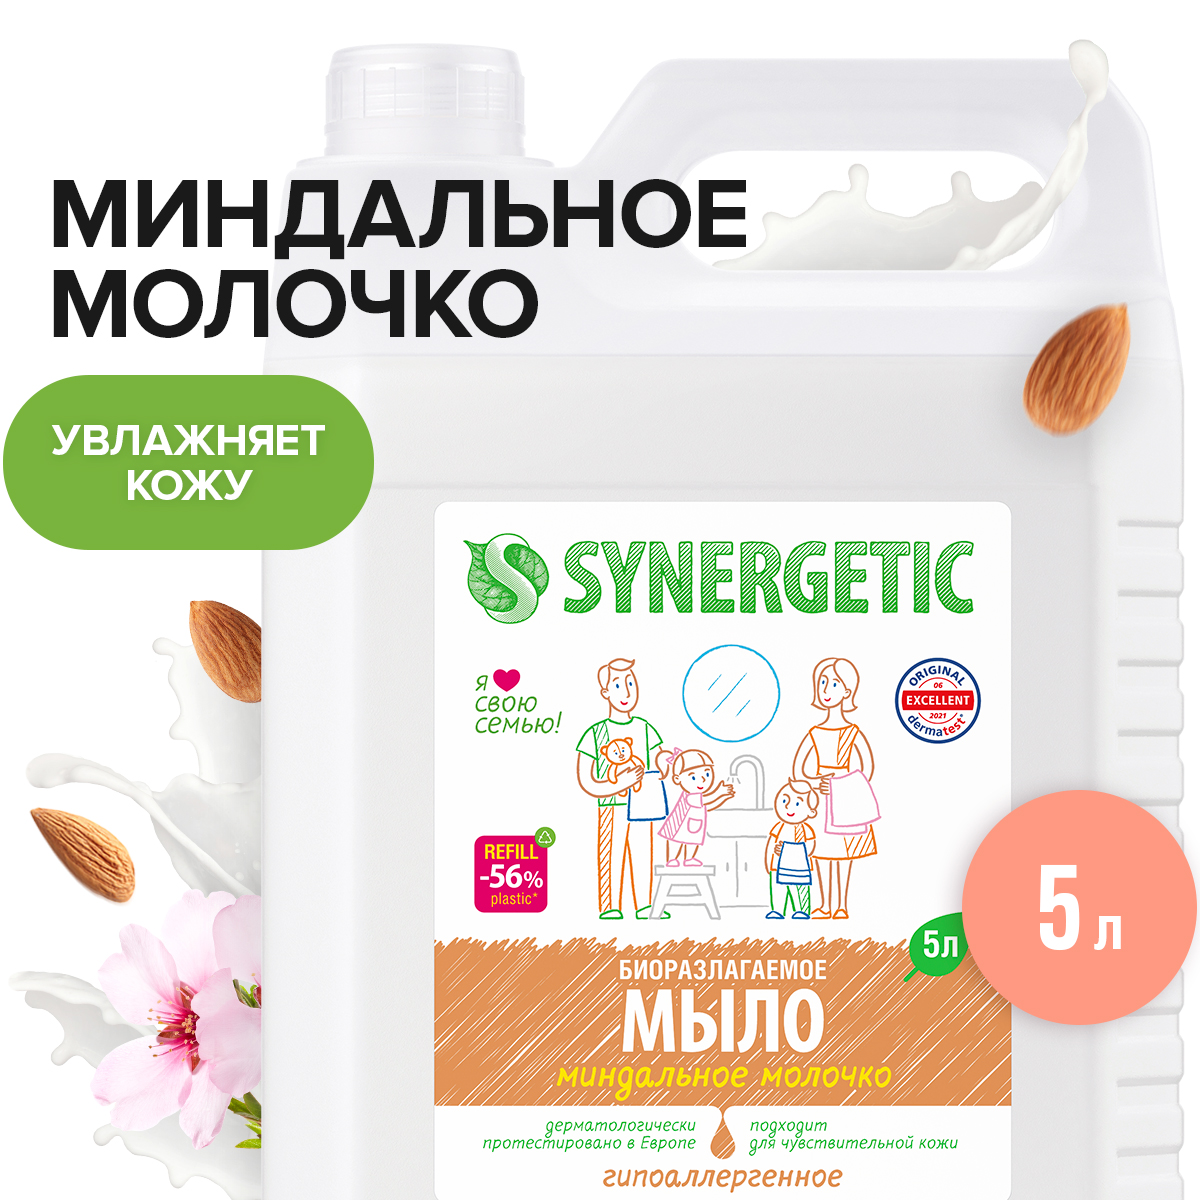 Мыло жидкое Synergetic Миндальное молочко гипоаллергенное, с эффектом увлажнения 5 л - купить в Мегамаркет, цена на Мегамаркет